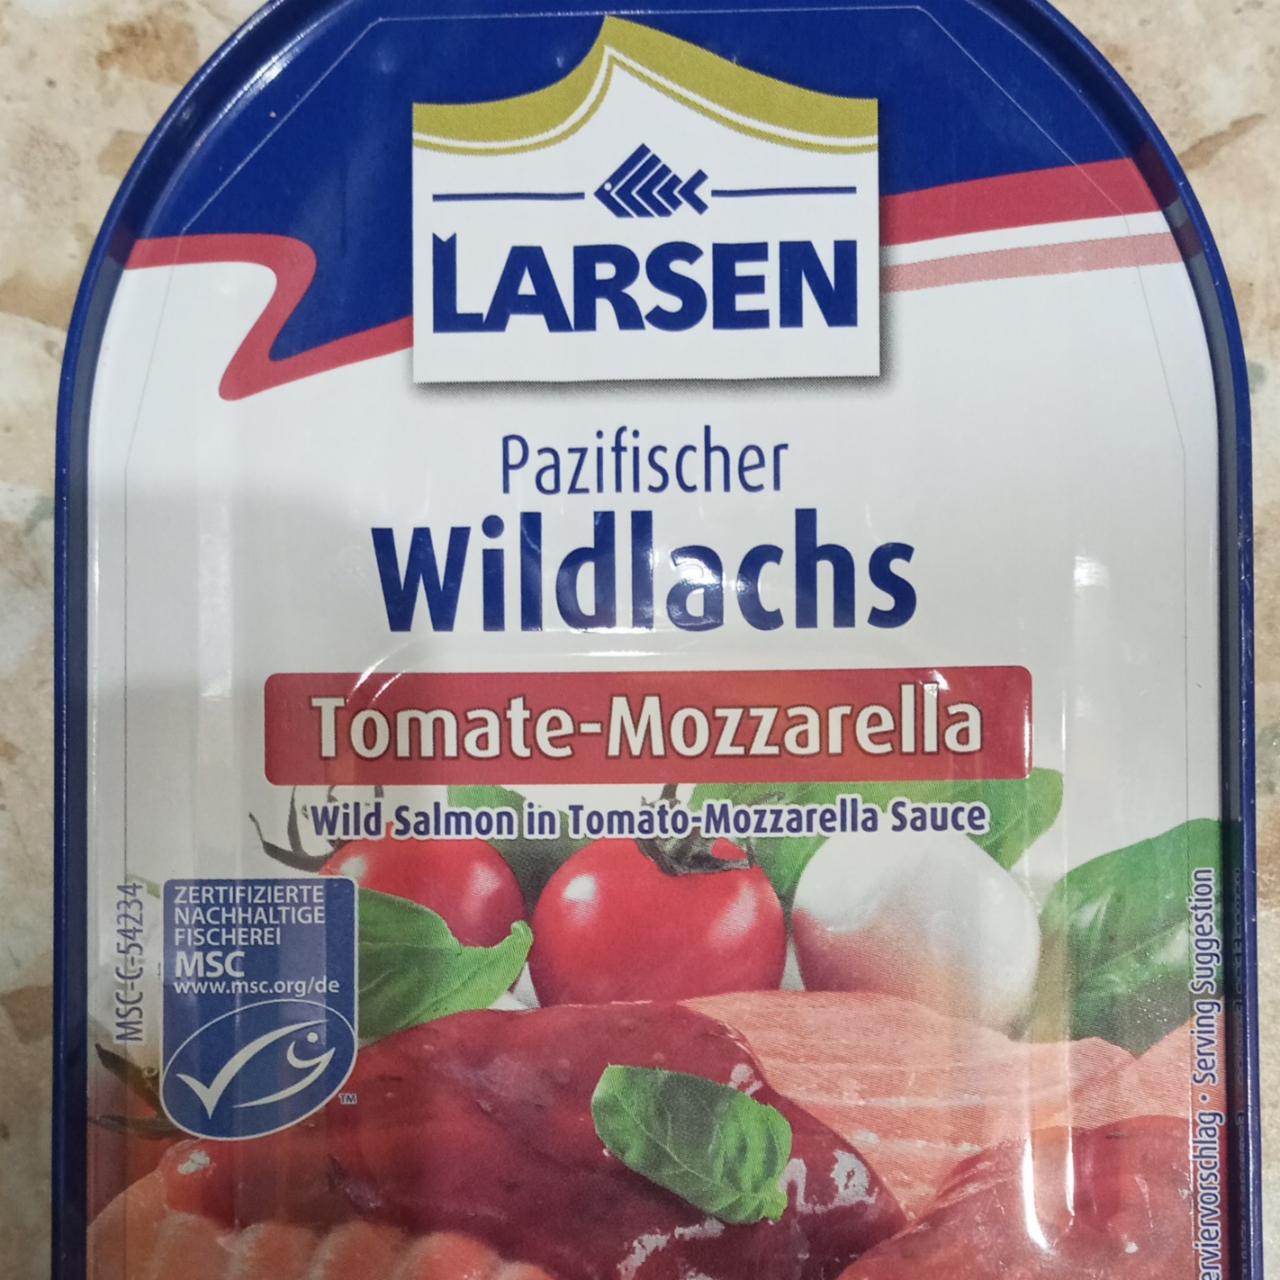 Фото - Pazifischer Wildlach Tomate-Mozzarella, Larsen